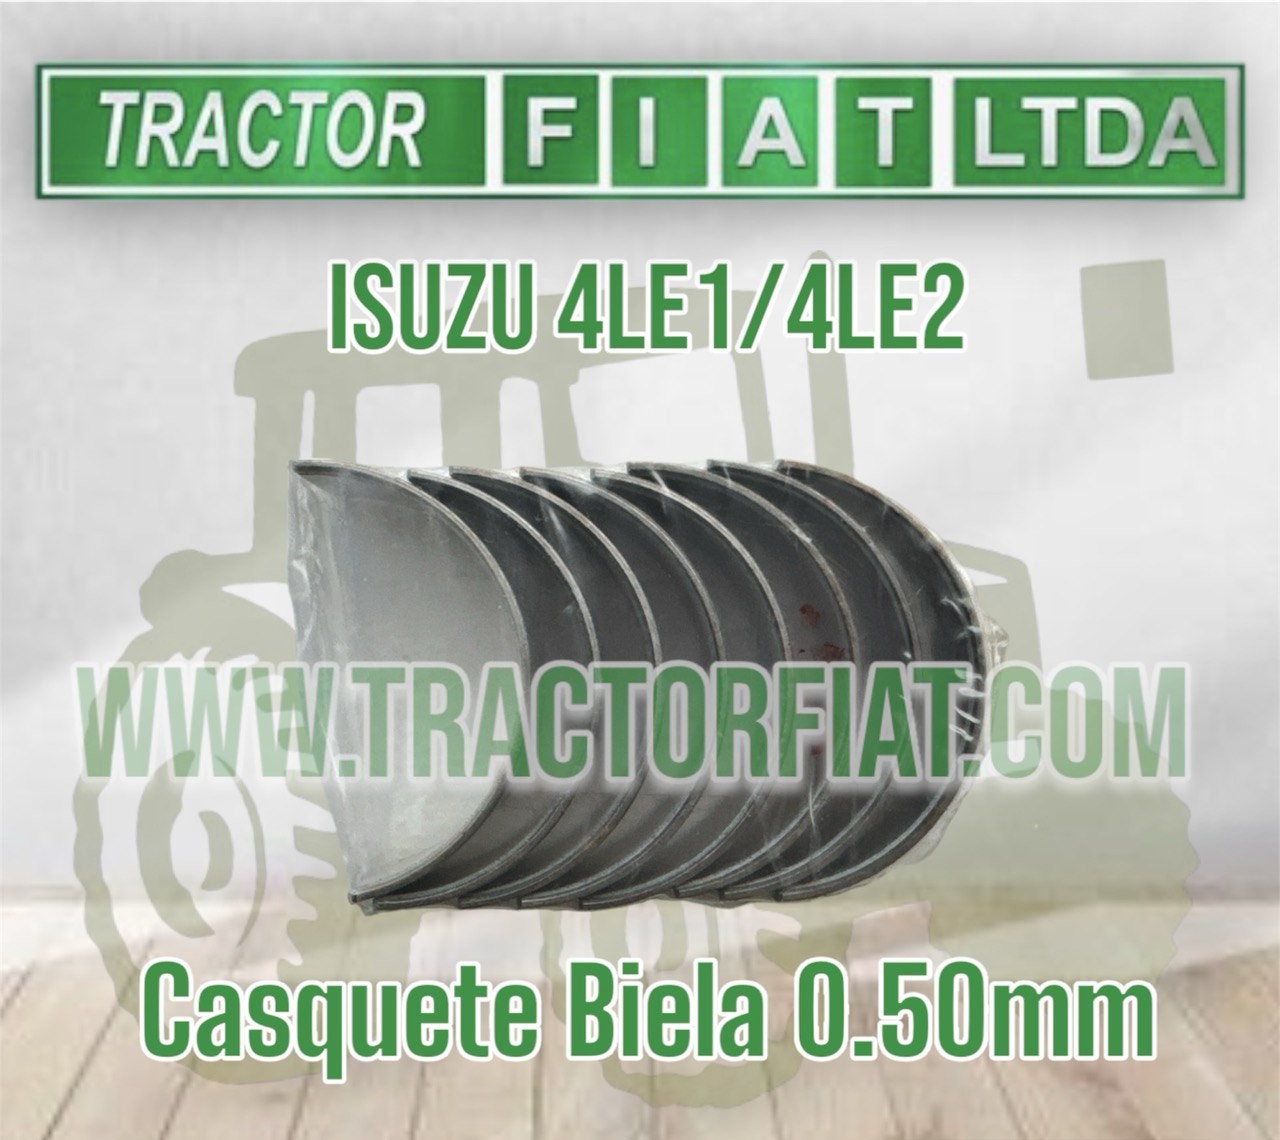 CASQUETES BIELA 0.50 MM - MOTOR ISUZU 4LE1/4LE2